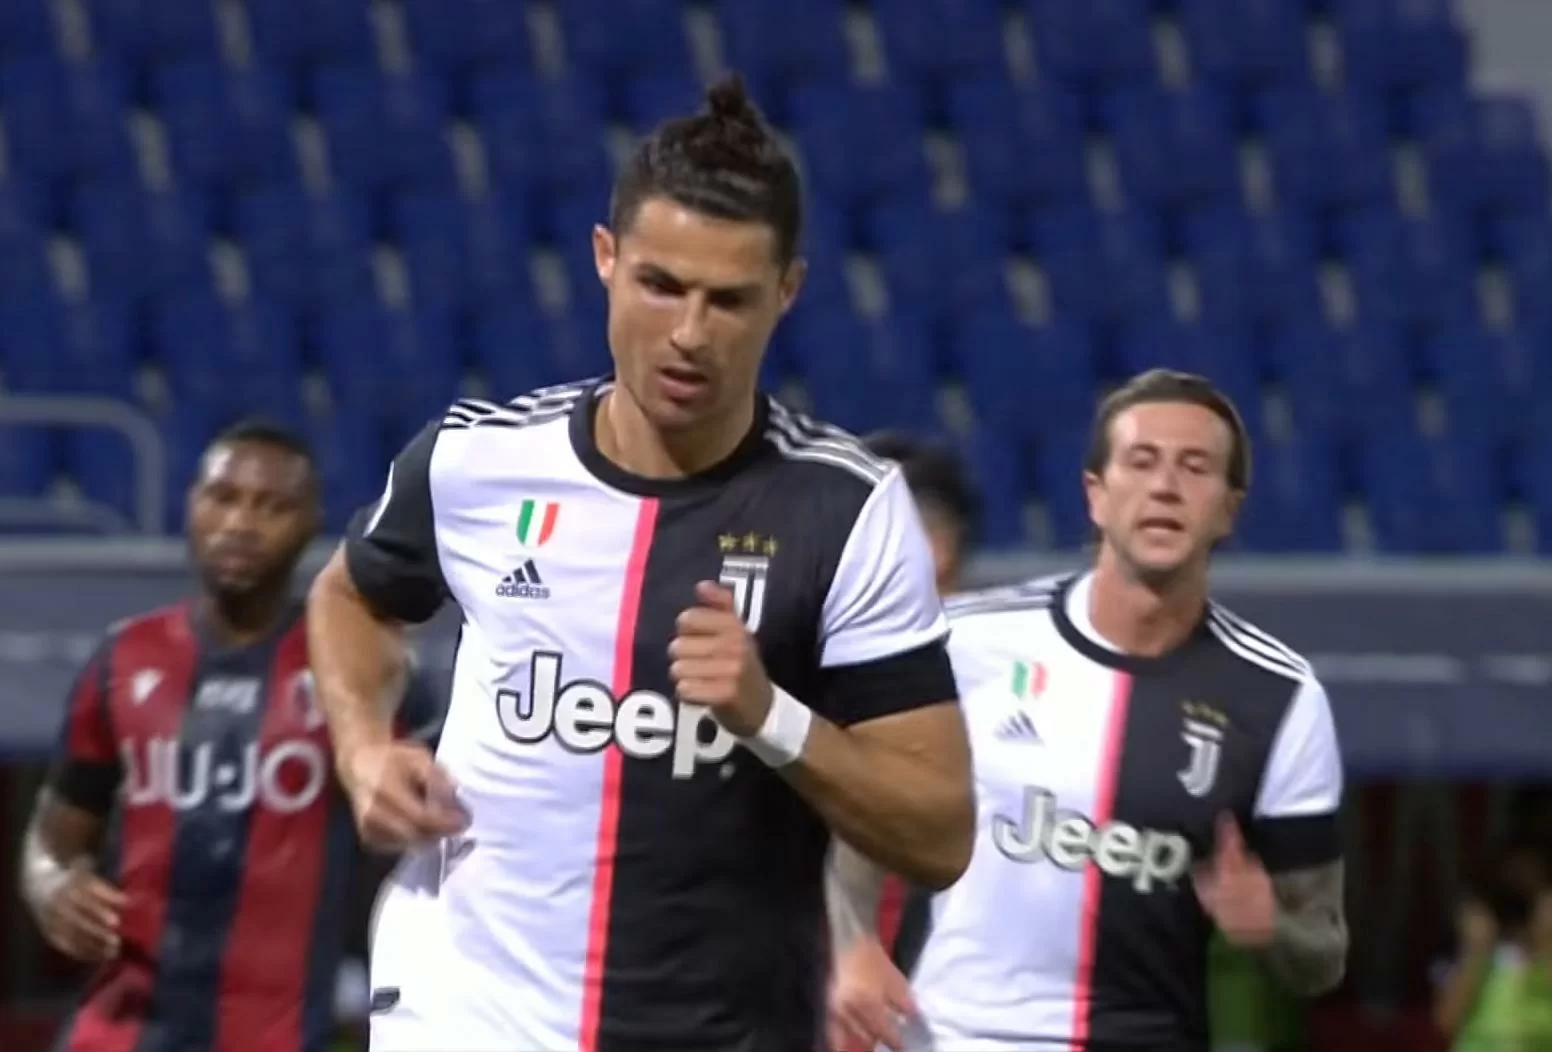 Ronaldo a fine partita: “Non è importante chi segna, ma che la squadra vinca. Adesso testa al Milan”